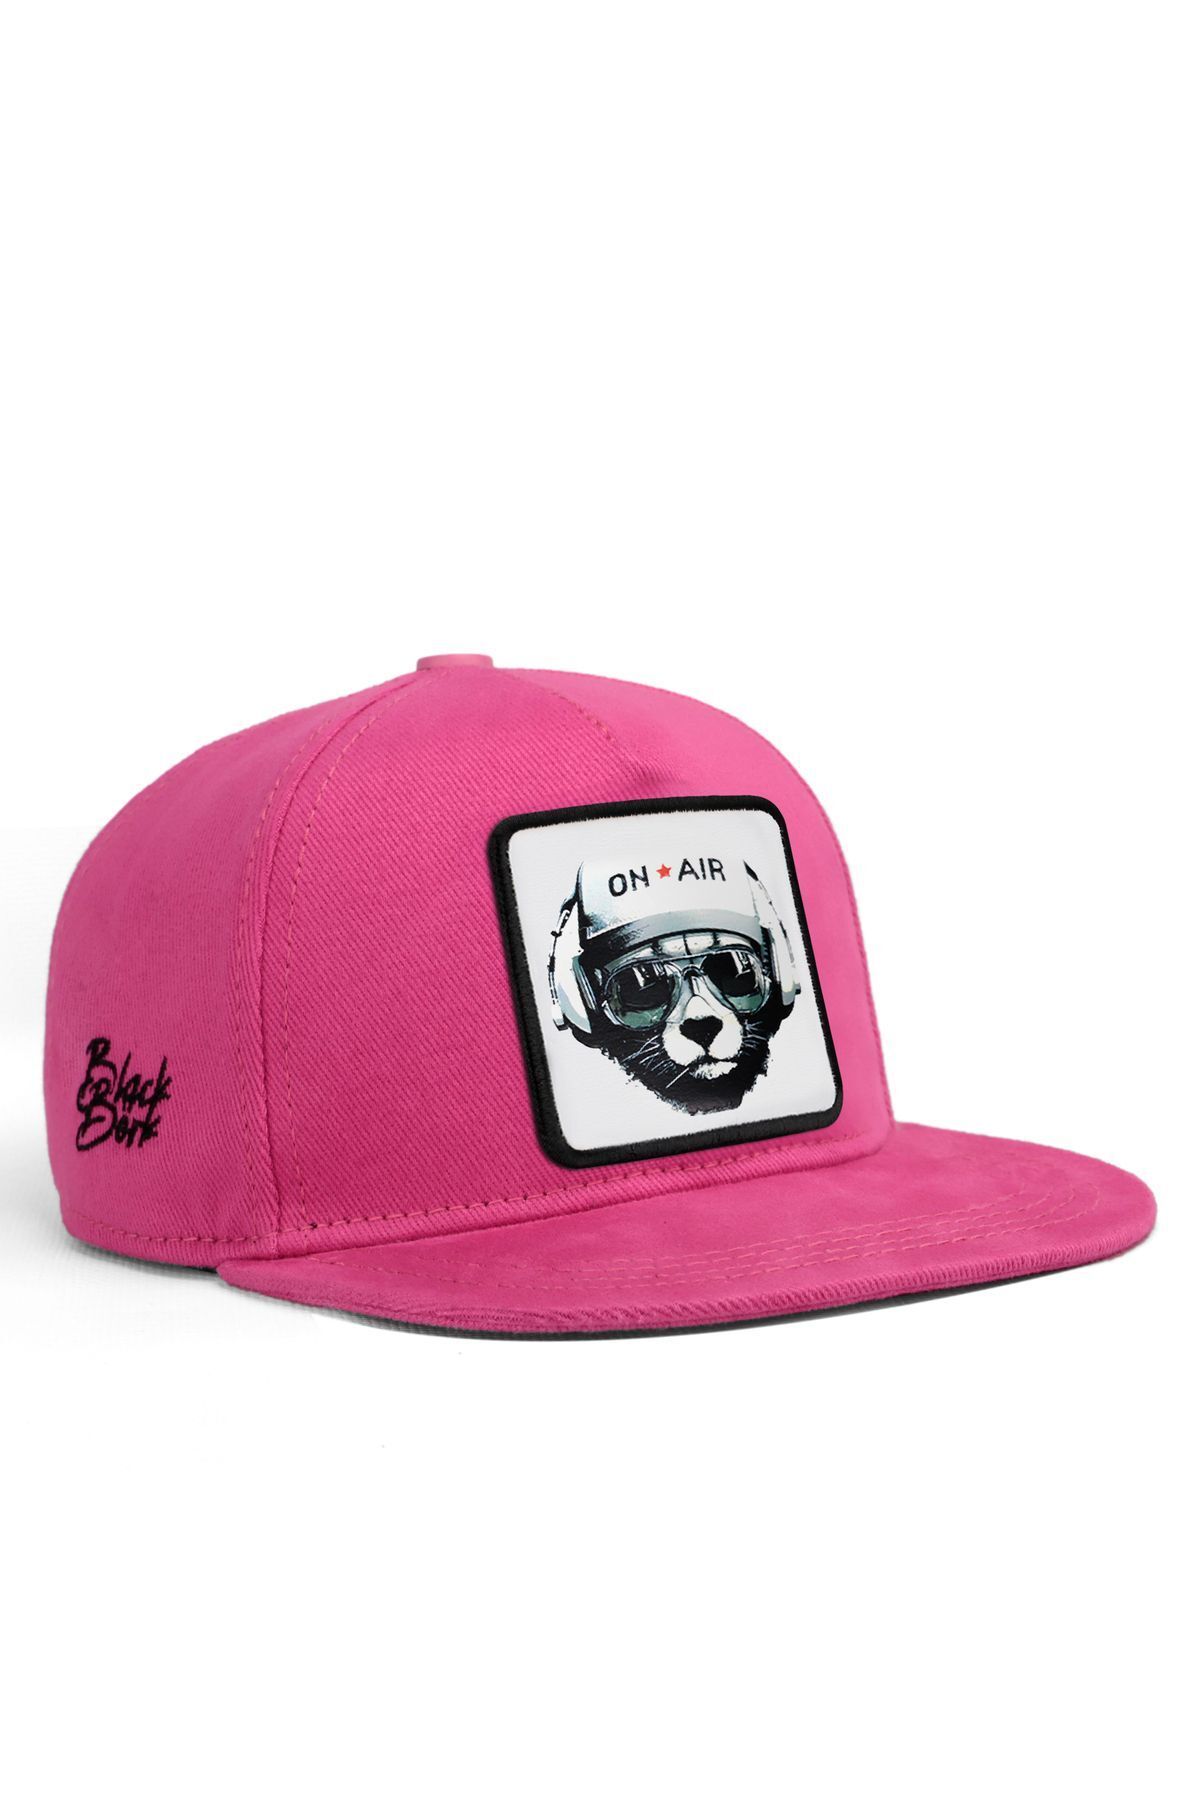 BlackBörk V1 Hip Hop Kids Ayı - 1bs Kod Logolu Unisex Pembe Çocuk Şapka (CAP)